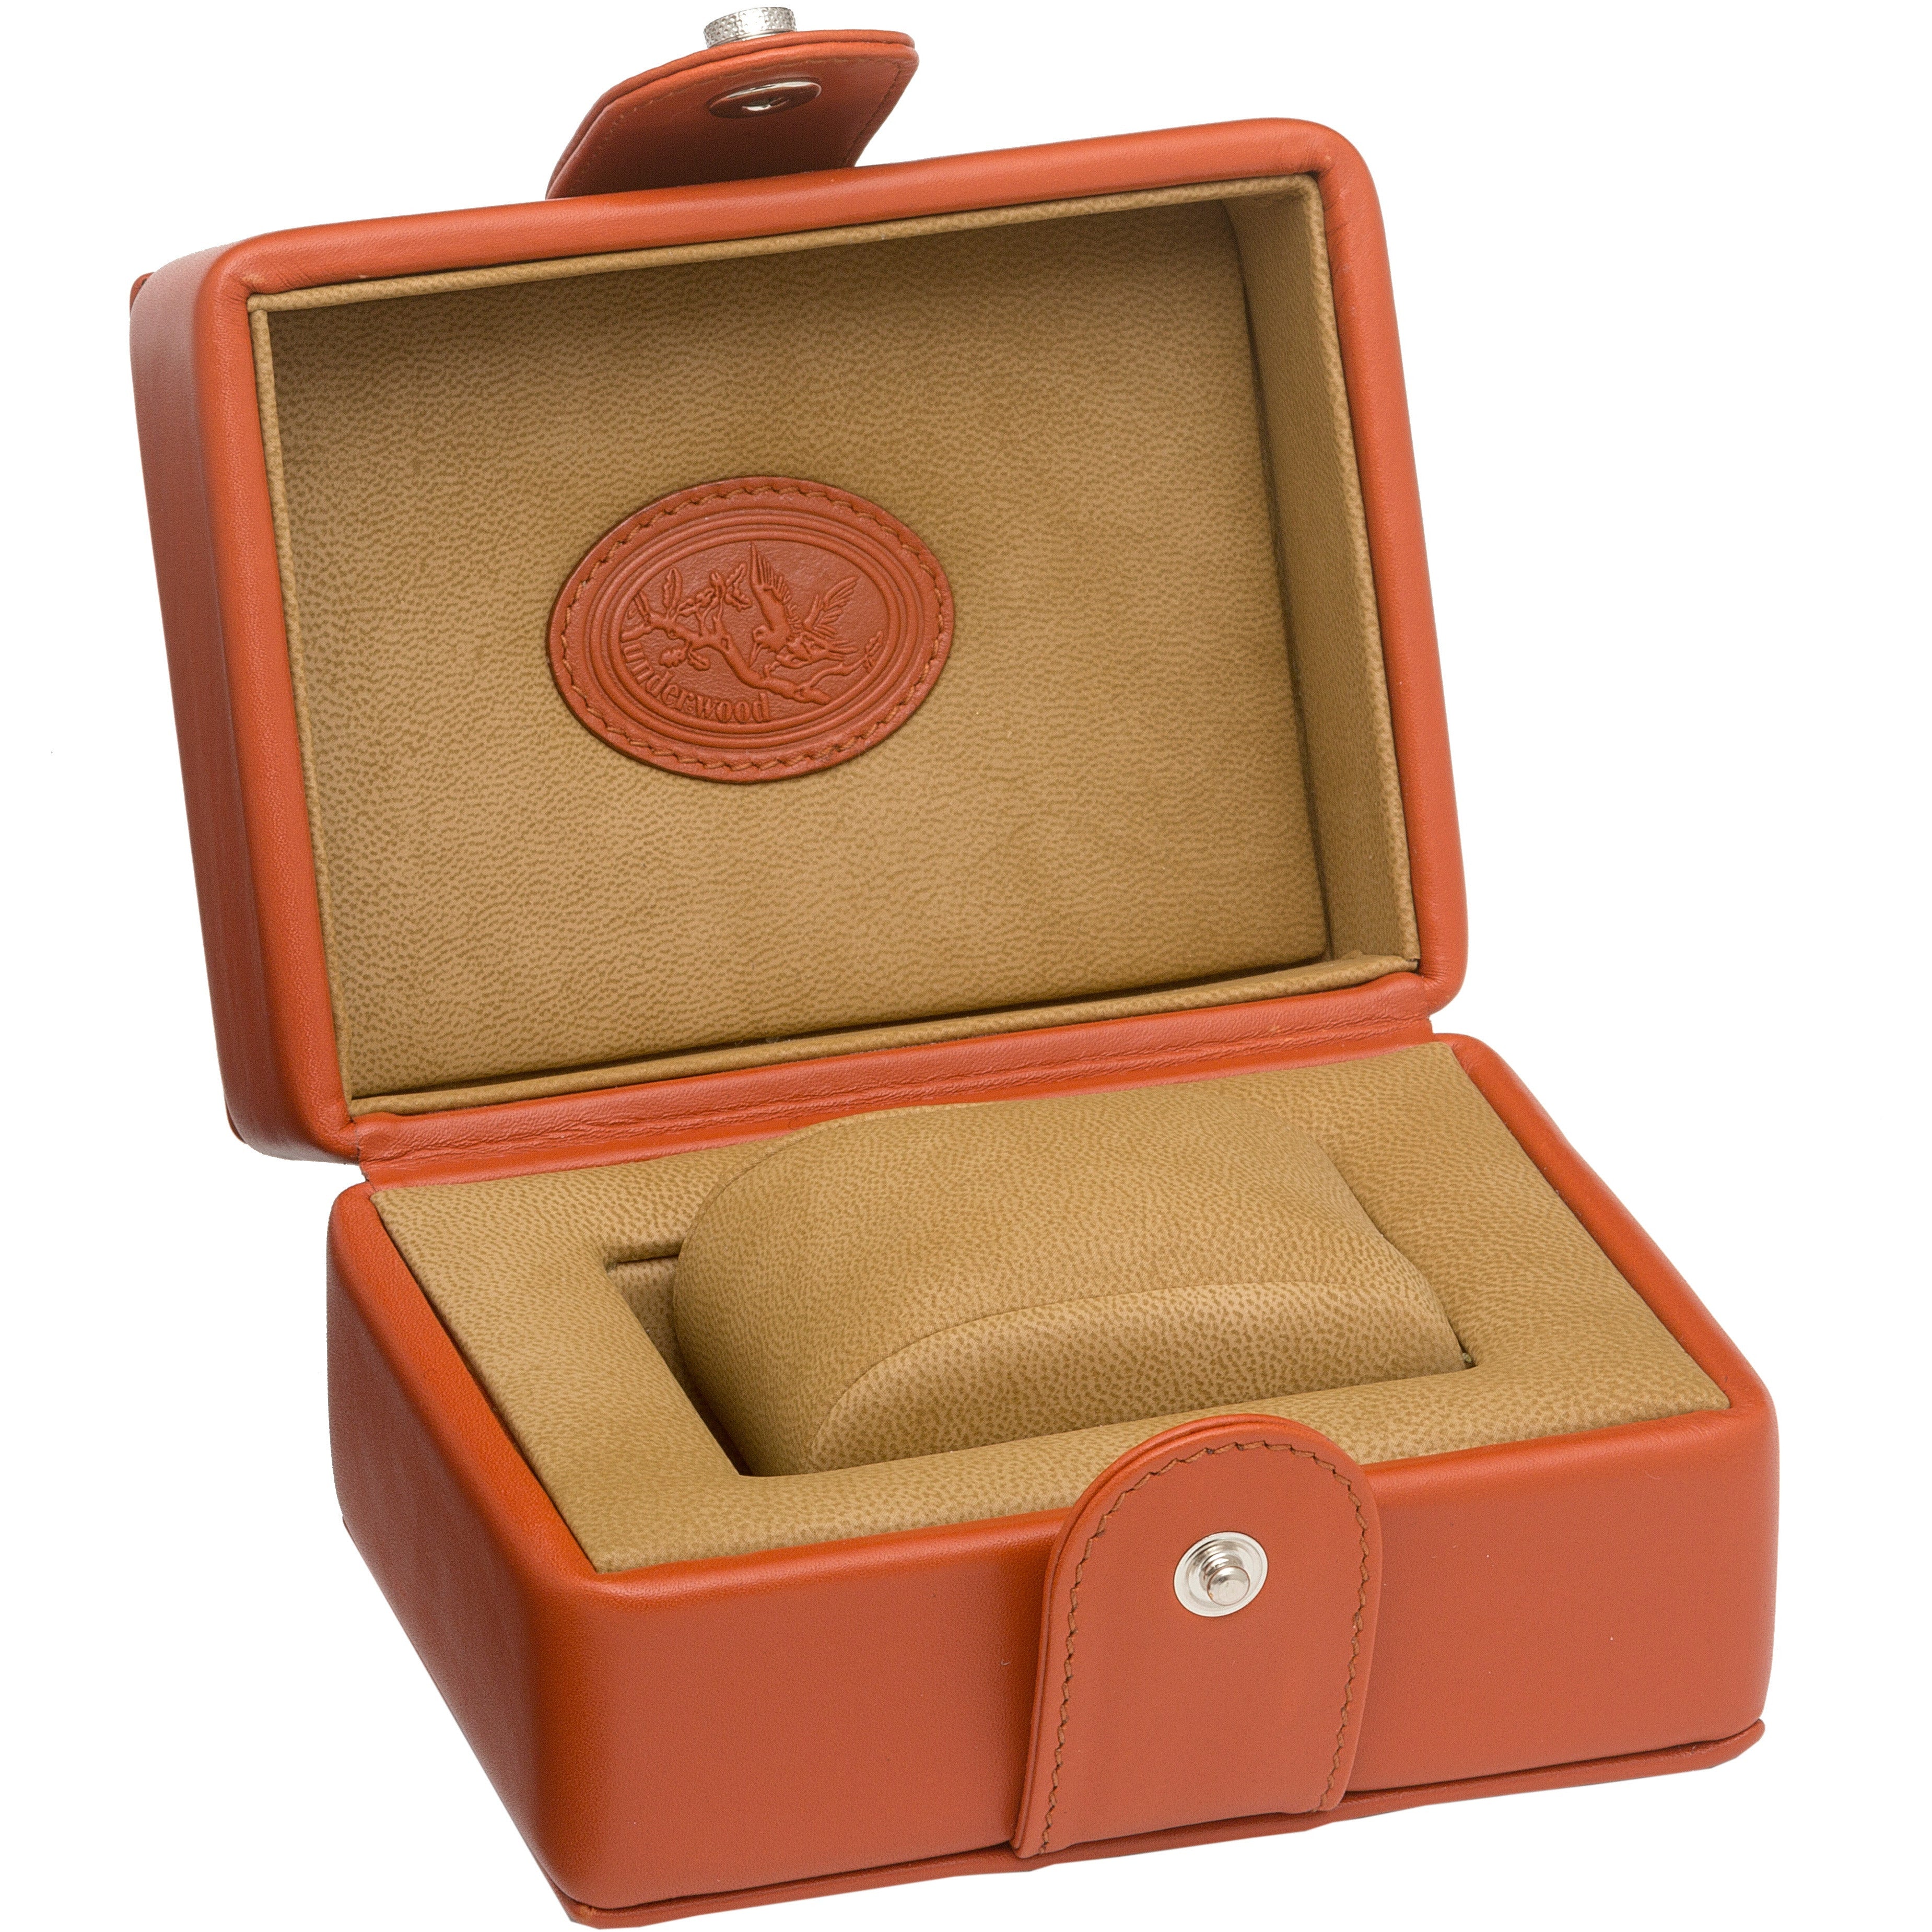 Underwood (London) - Single Watch Storage Case in Tan Leather